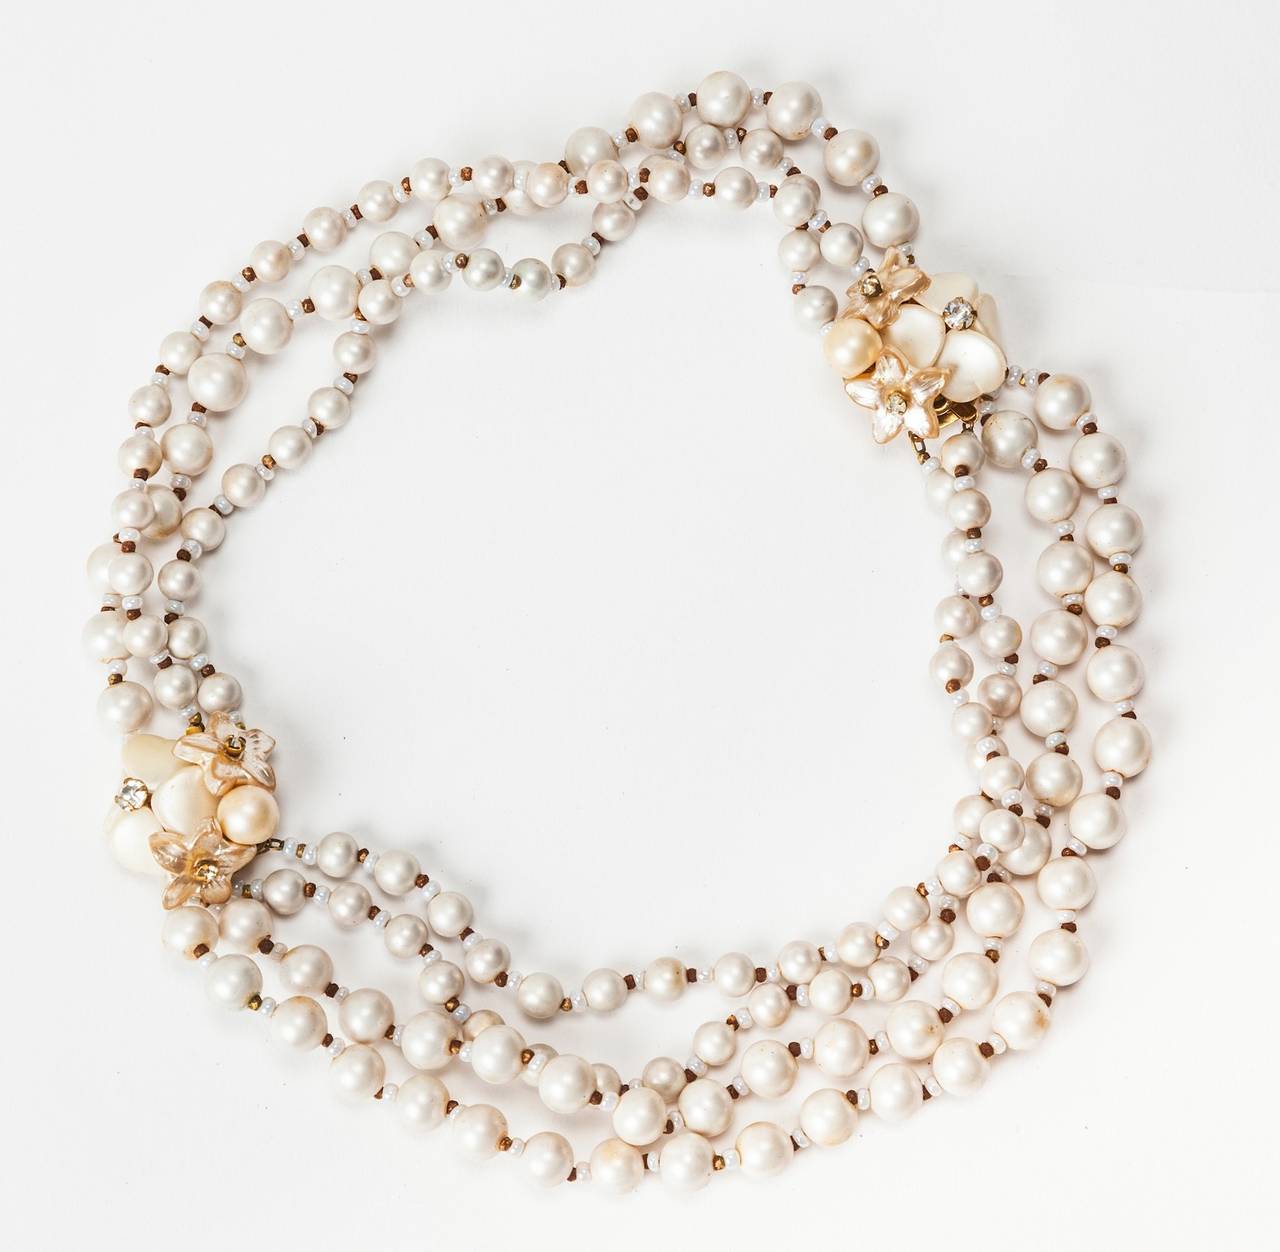 Collier de transformation en fausses perles d'eau douce, diamants et dorures, signature de Miriam Haskell, avec fermoirs floraux pouvant se transformer en 2 bracelets. Un bracelet a 3 brins et l'autre en a 4, tous avec des entretoises en perles de